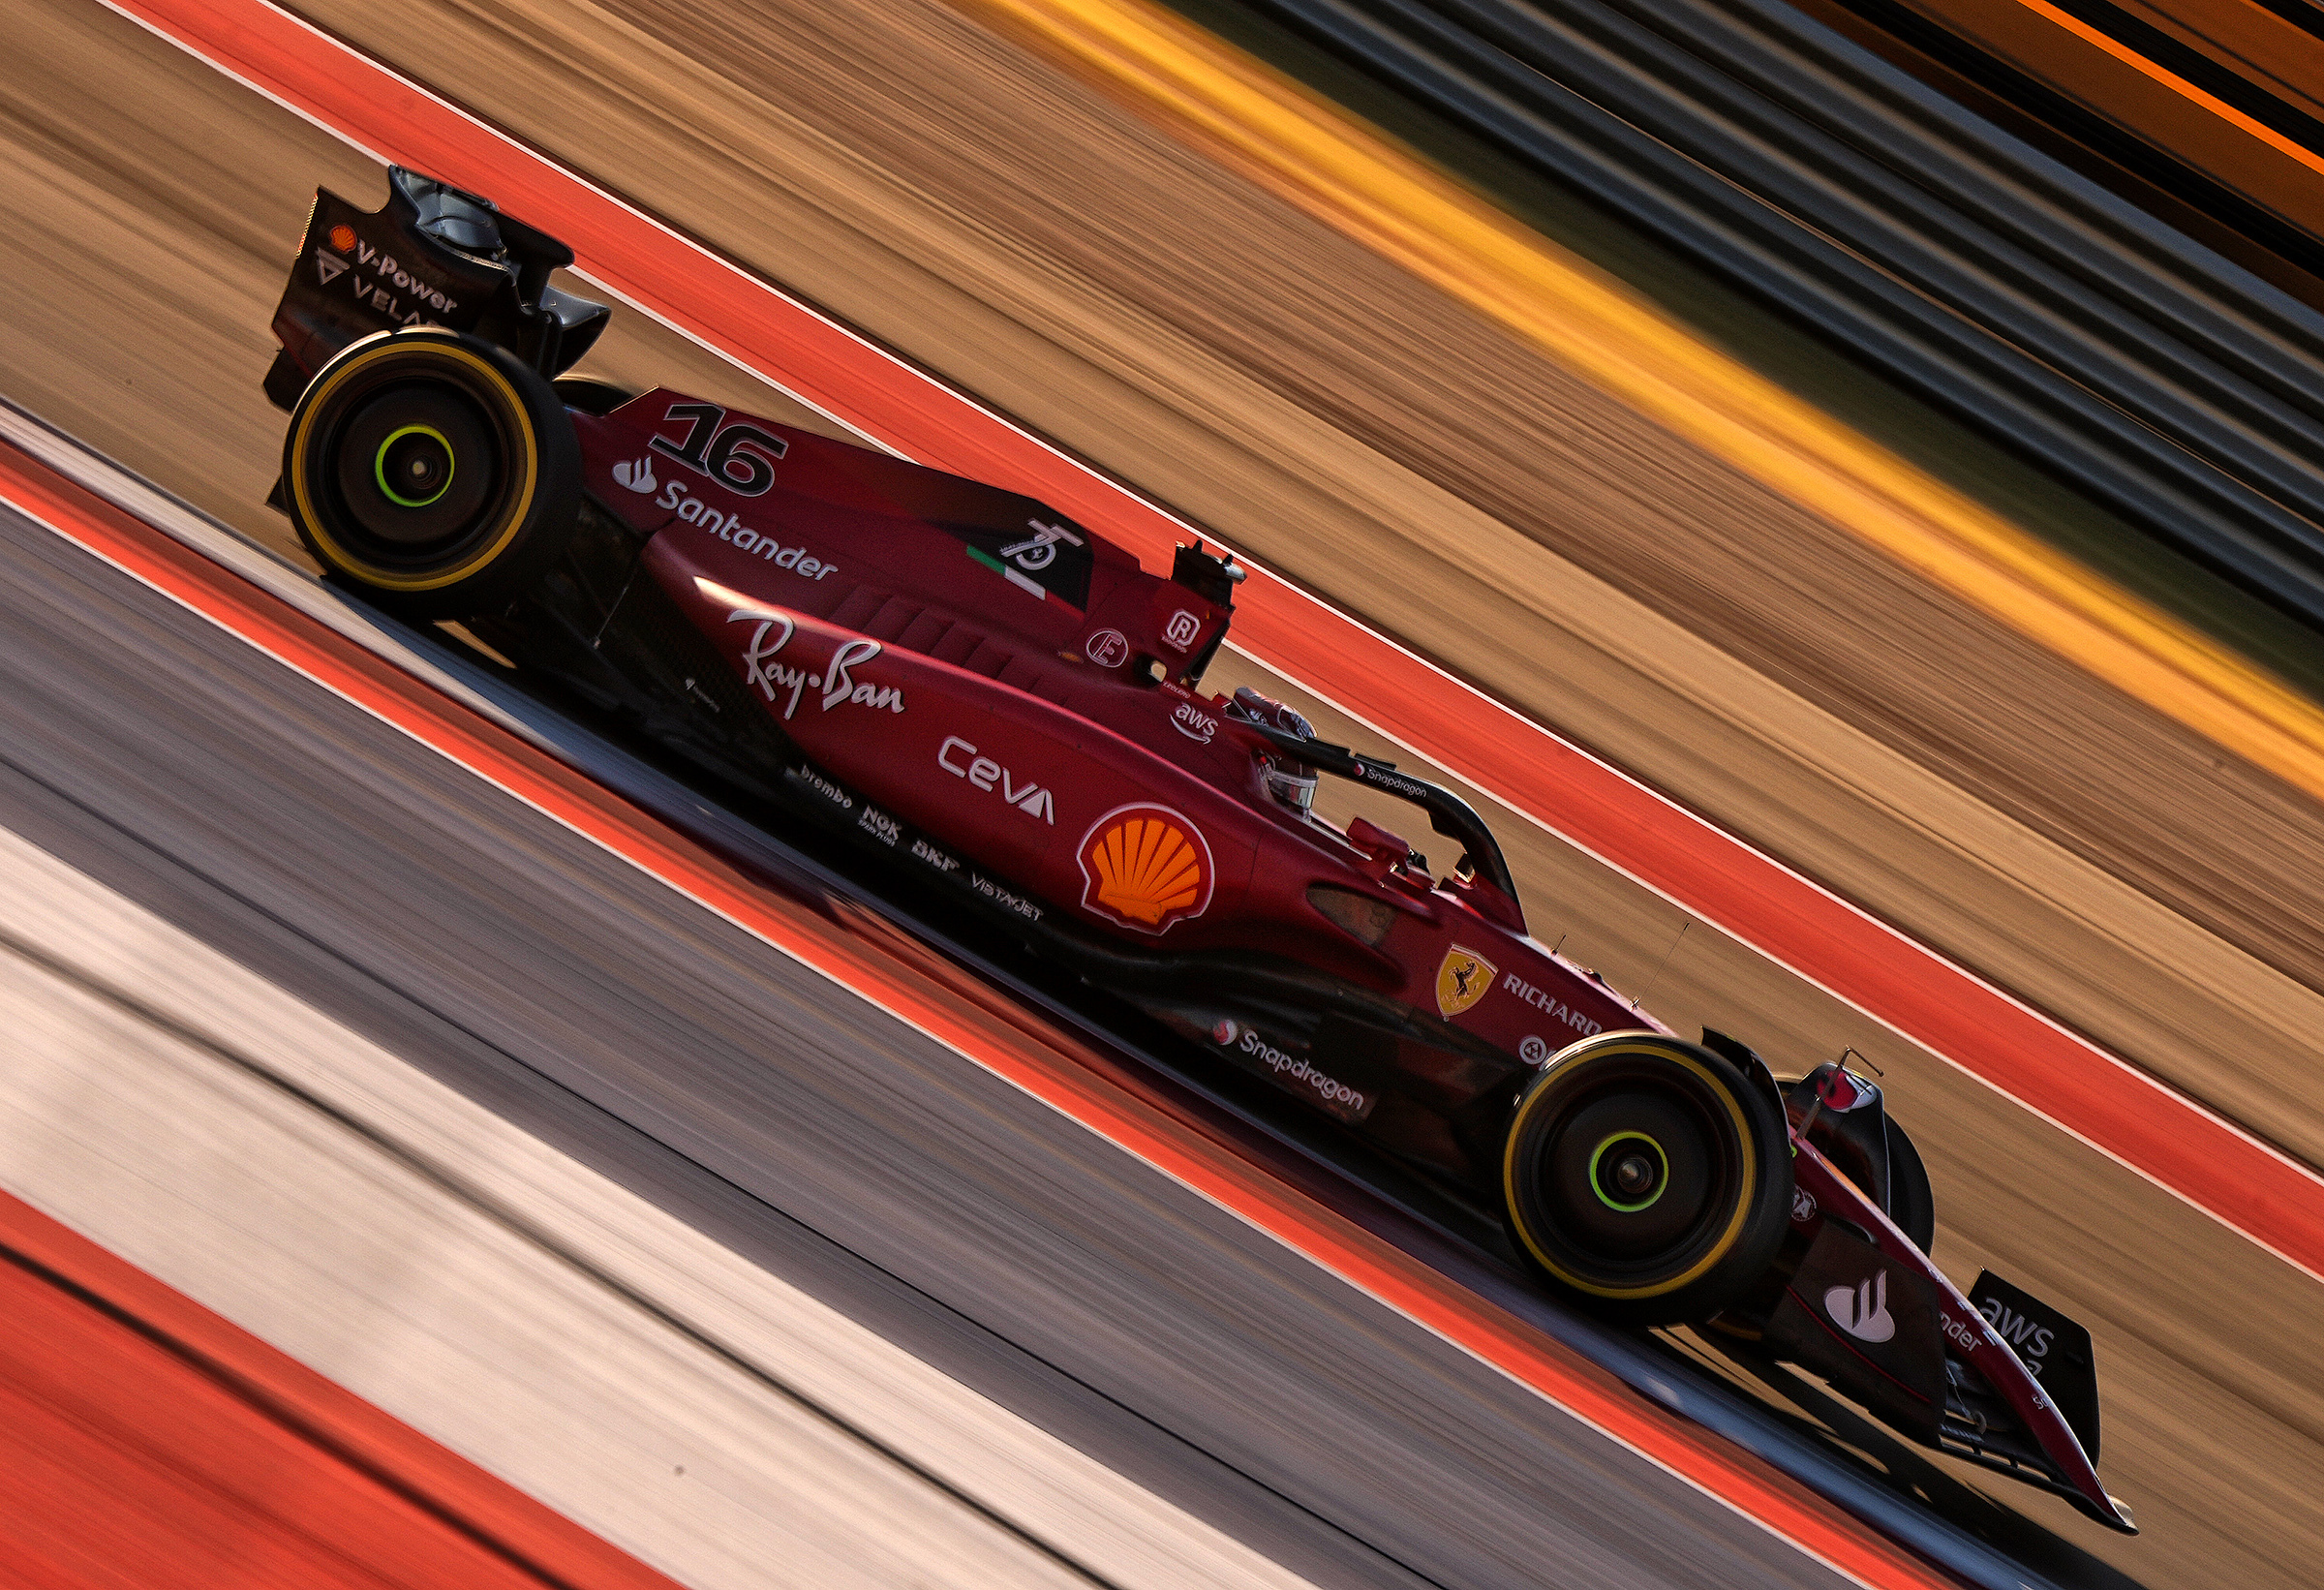 Carlos Leclerc drives for Ferrari at the U.S. Grand Prix in Austin.